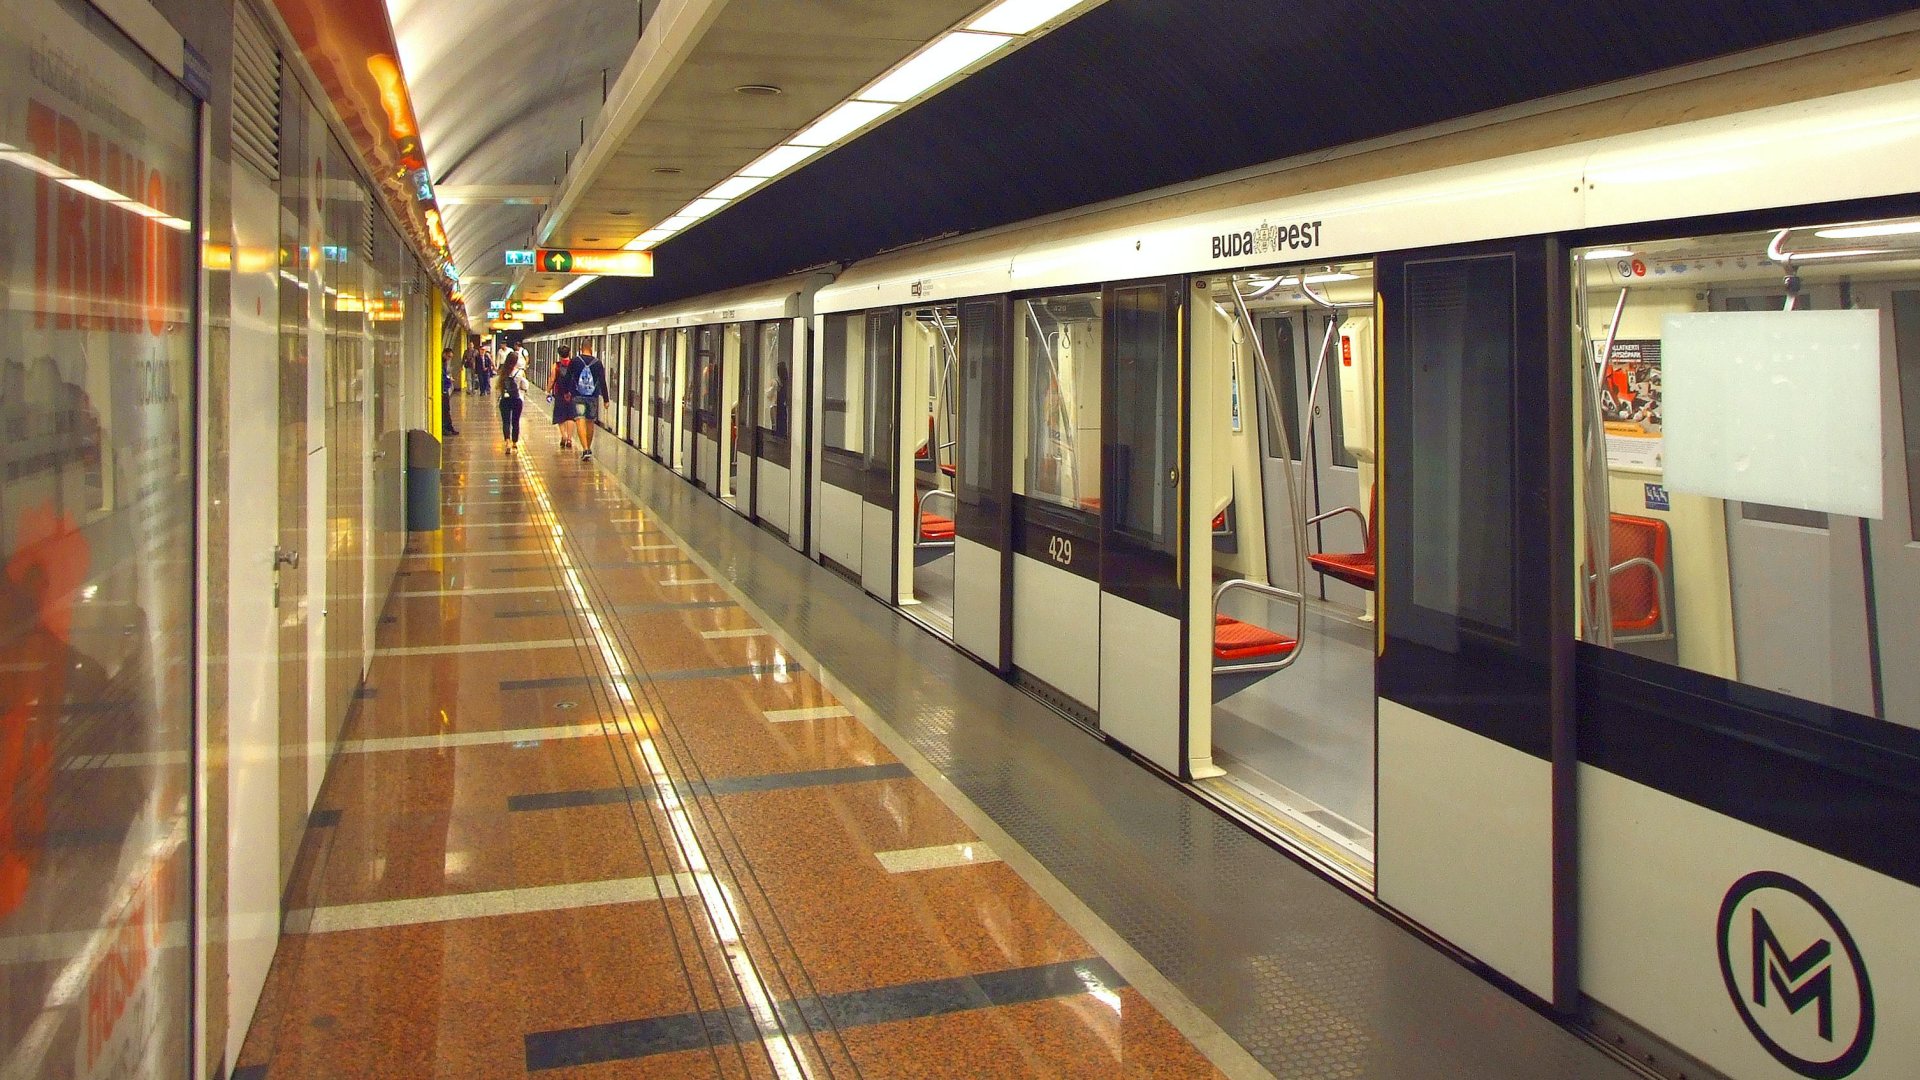 A Budapesti Közlekedési Központ (BKK) 2-es metró vonalán közlekedõ egyik Alstom szerelvény megérkezett a Déli pályaudvari végállomására